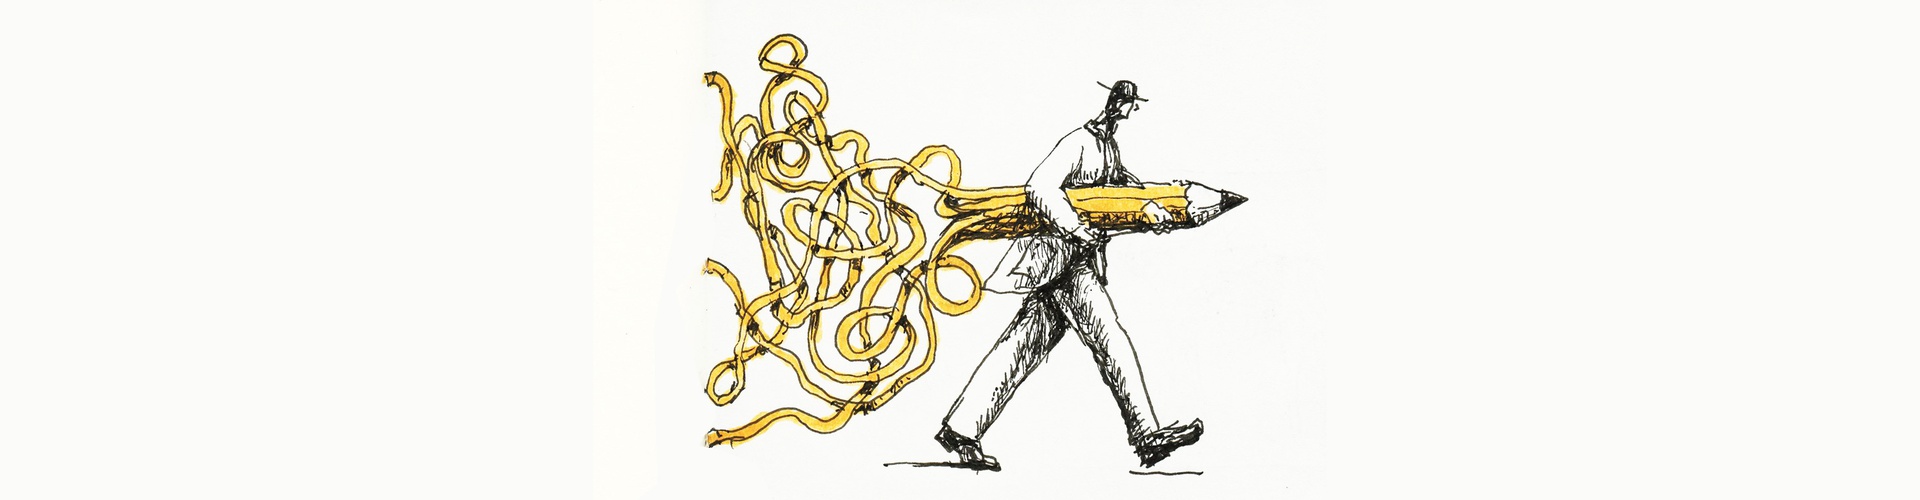 گالری آثار تصویرسازی کریگ فریزر از آمریکا